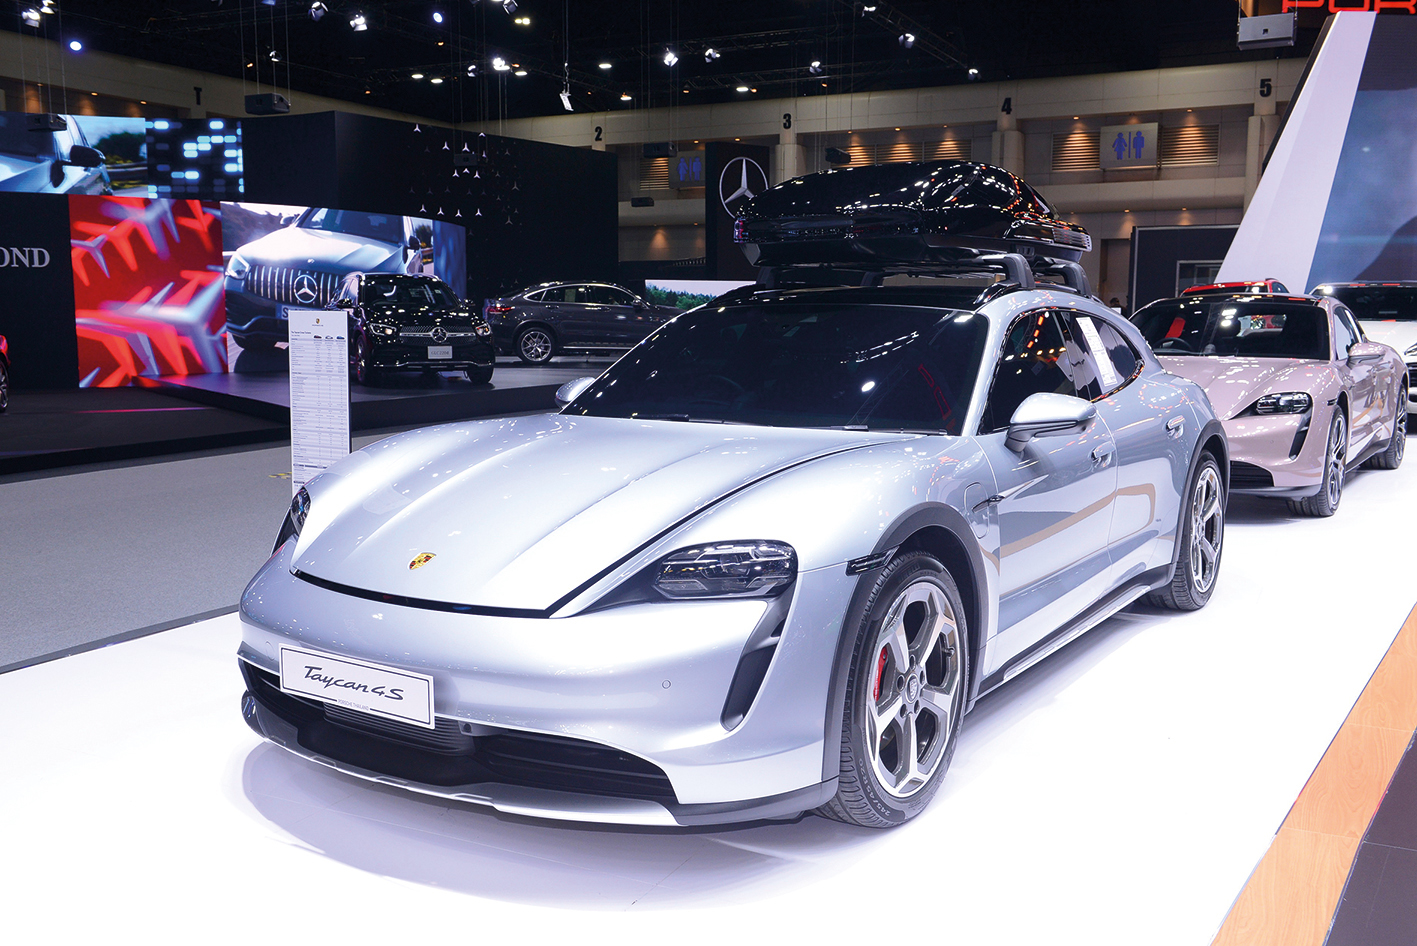 MOTOR EXPO 2022 ยอดขายรถพุ่งกว่า 4 หมื่นคัน เงินหมุนเวียนกว่า 5 หมื่นล้านบาท